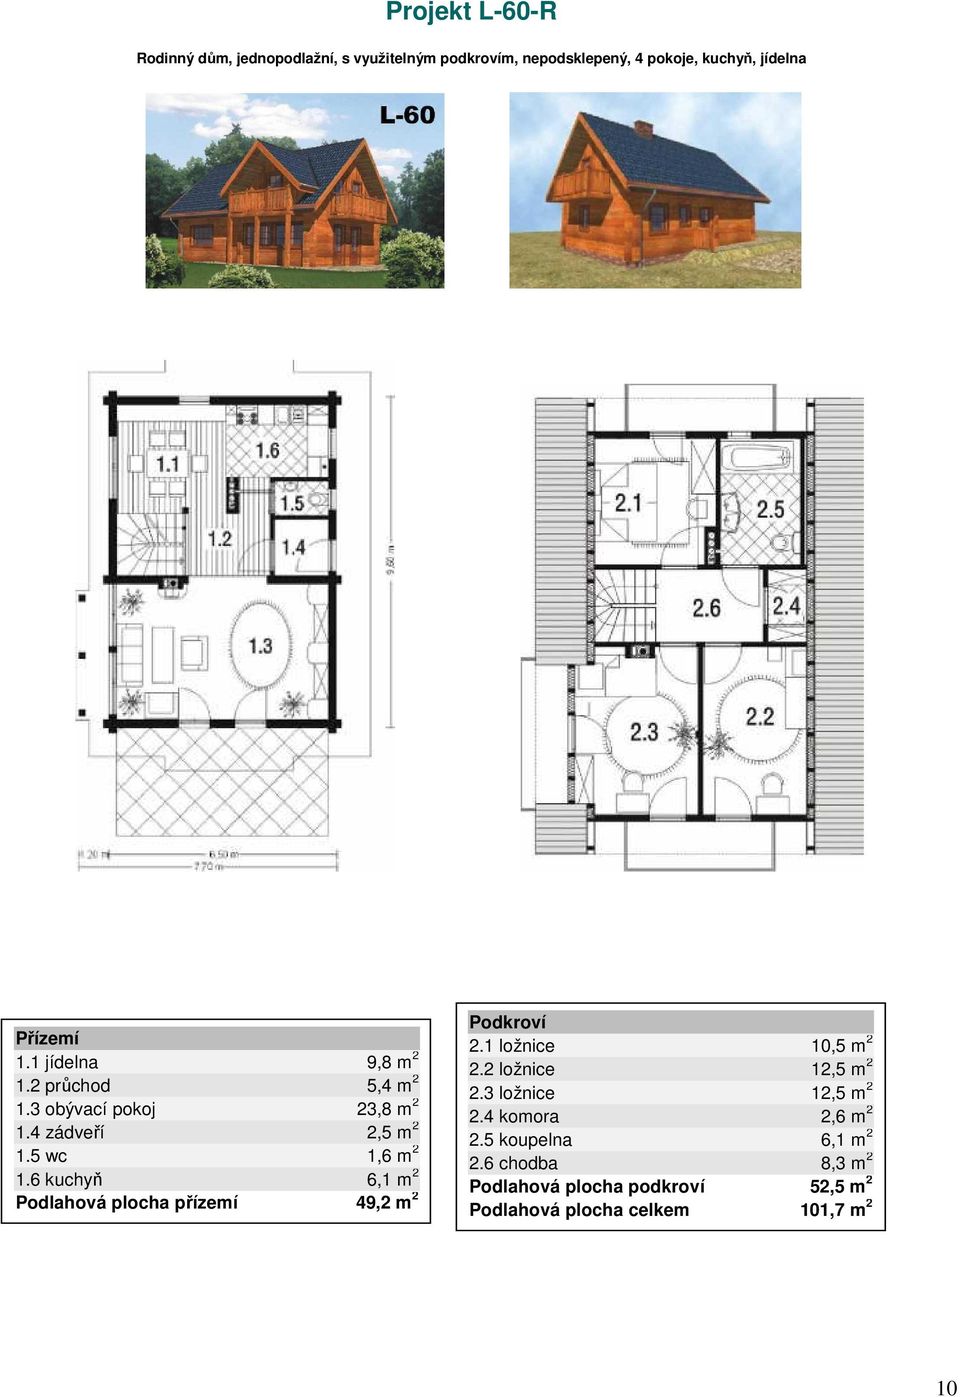 6 kuchyň 6,1 m 2 Podlahová plocha přízemí 49,2 m 2 2.1 ložnice 10,5 m 2 2.2 ložnice 12,5 m 2 2.